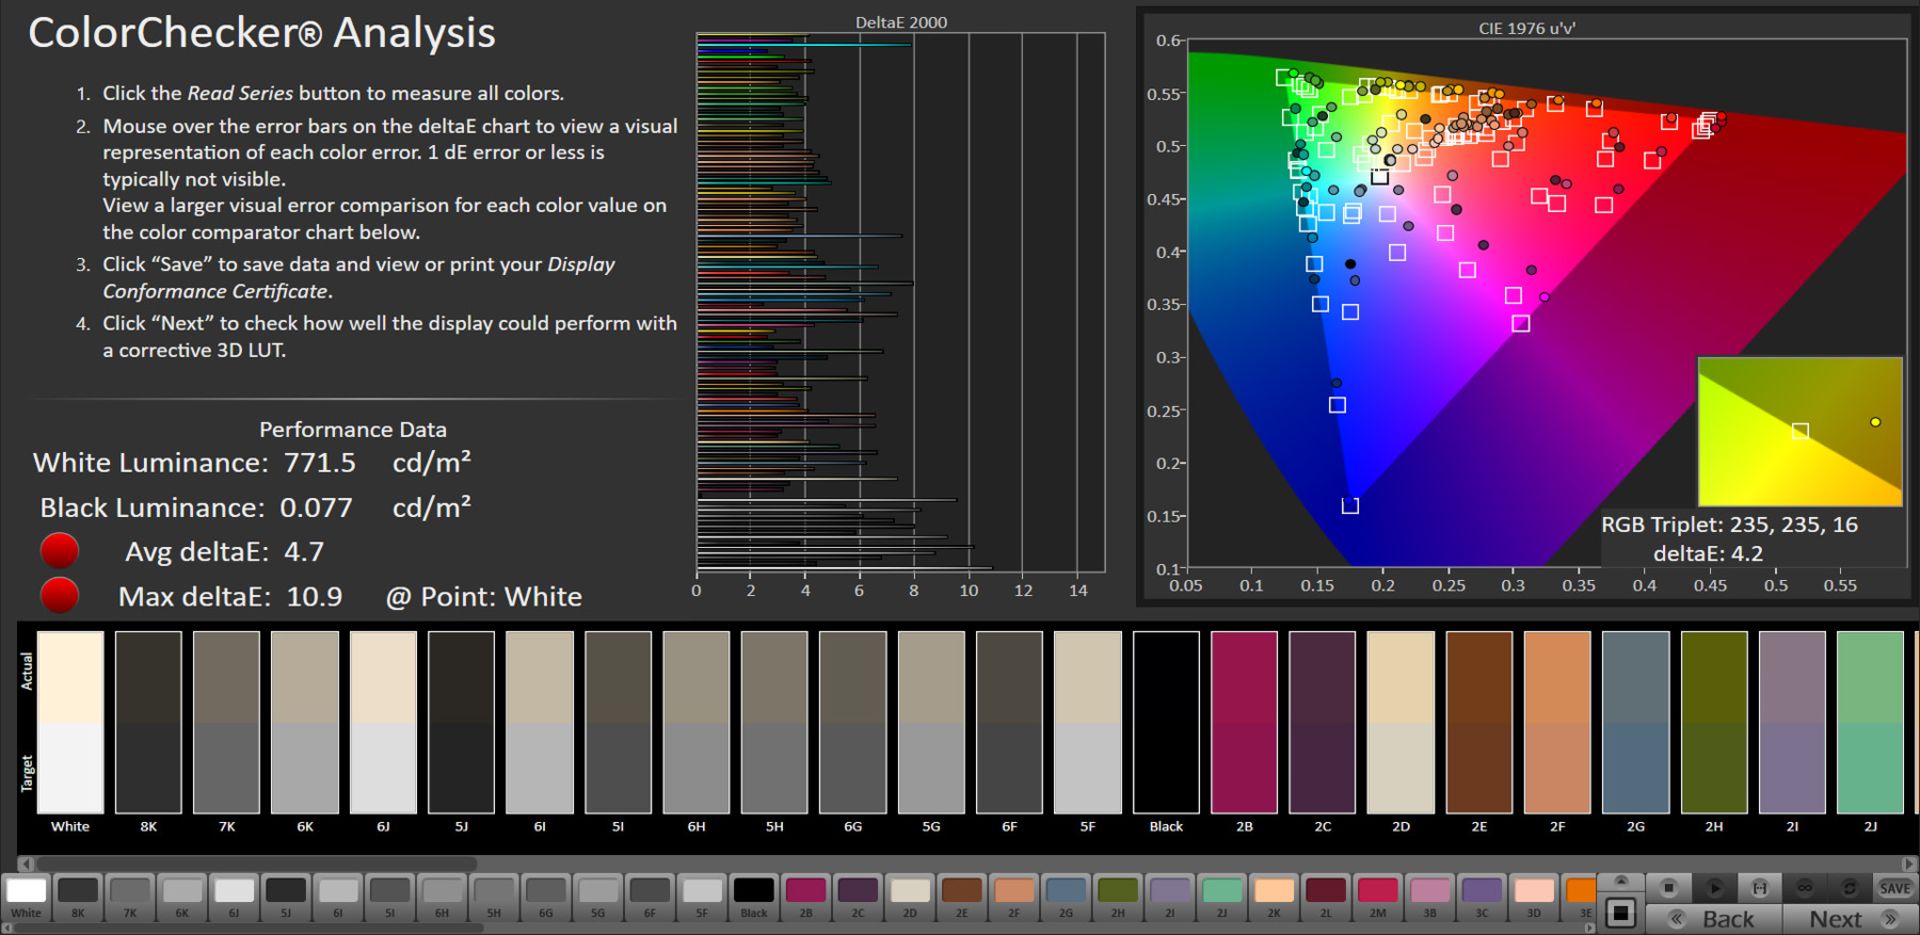 مرجع متخصصين ايران آيفون ۱۲ پرو - آزمايش خطاي رنگ در فضاي رنگ sRGB با فعال بودن True Tone